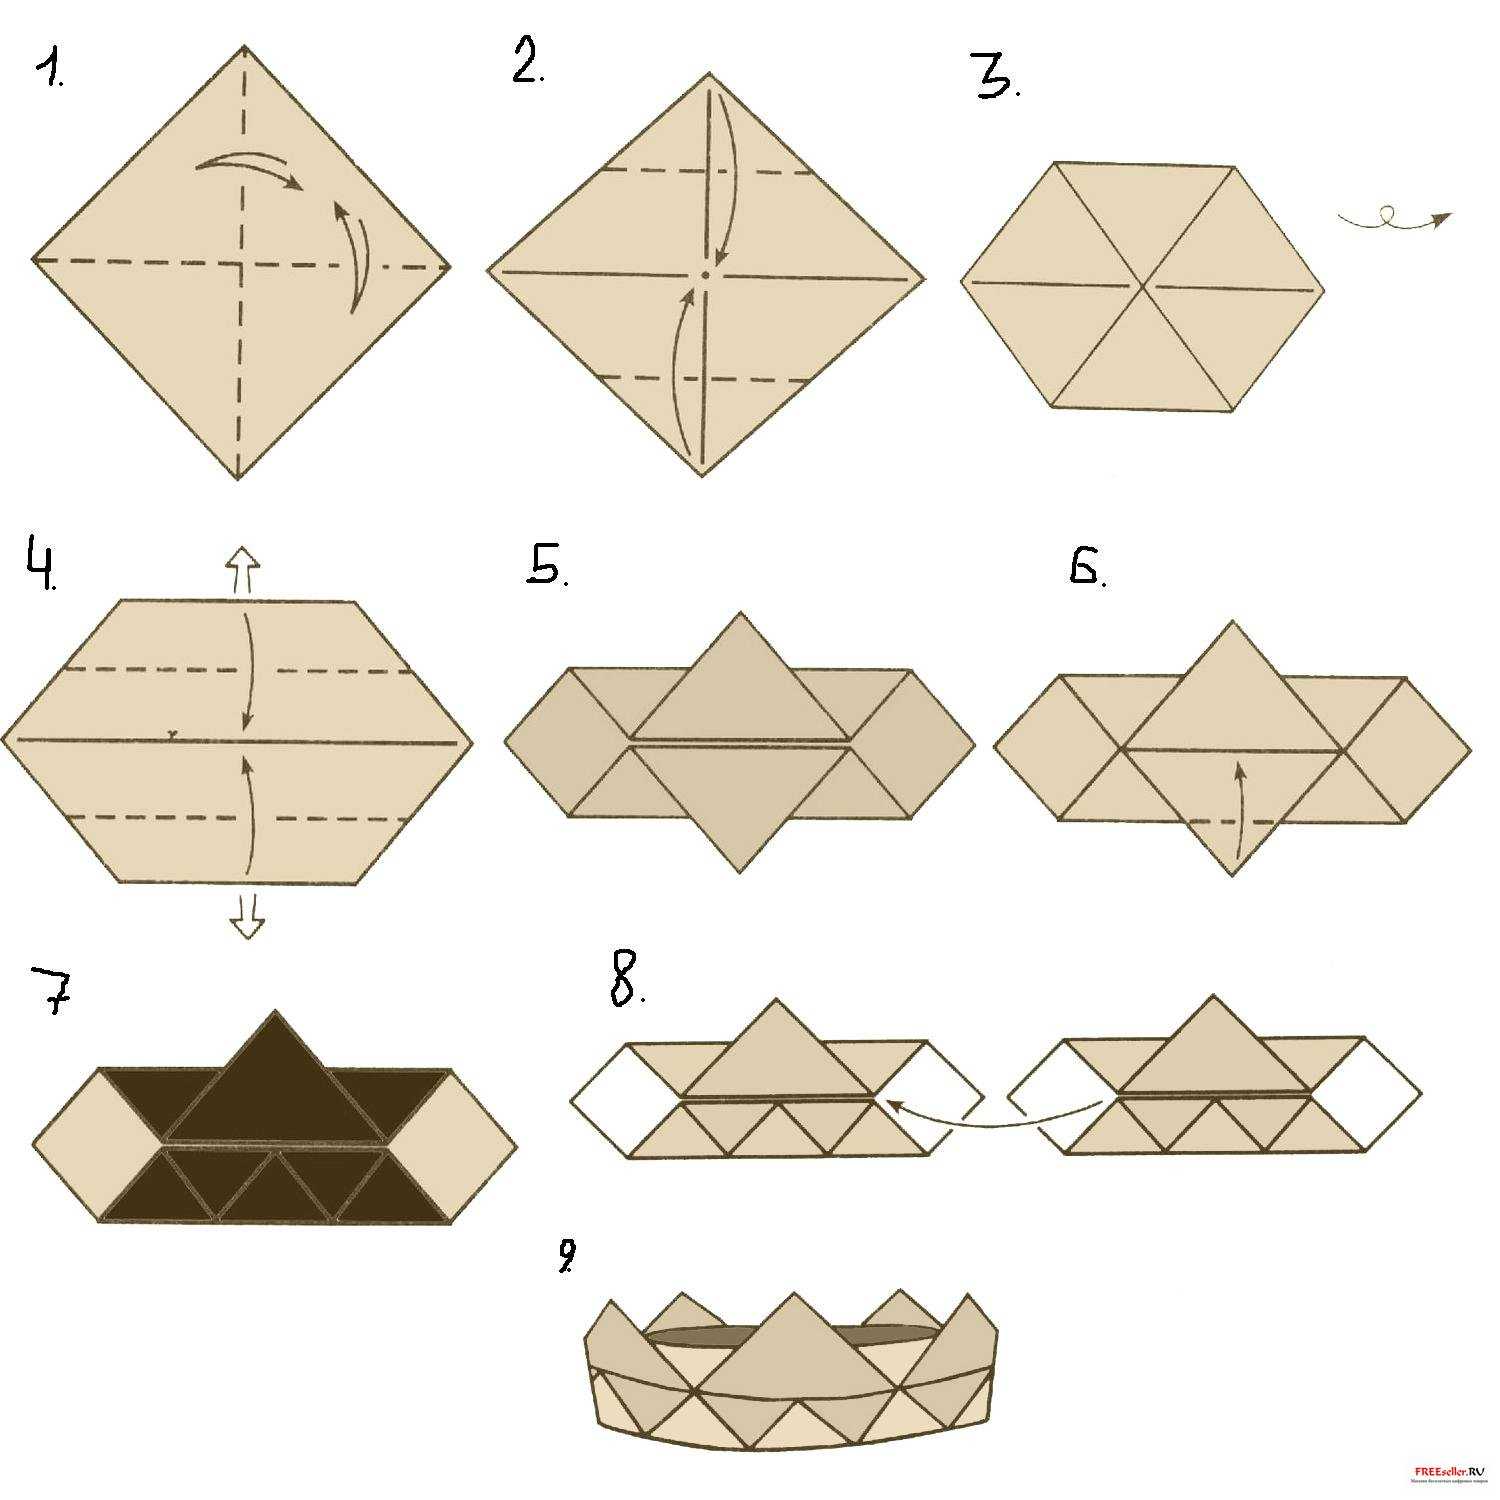 Оригами-корона - простая поделка ею можно украсить любую игрушку Этот подробный мастер-класс с фото и описание научит как сделать оригами для начинающих - оригами-корону из бумаги